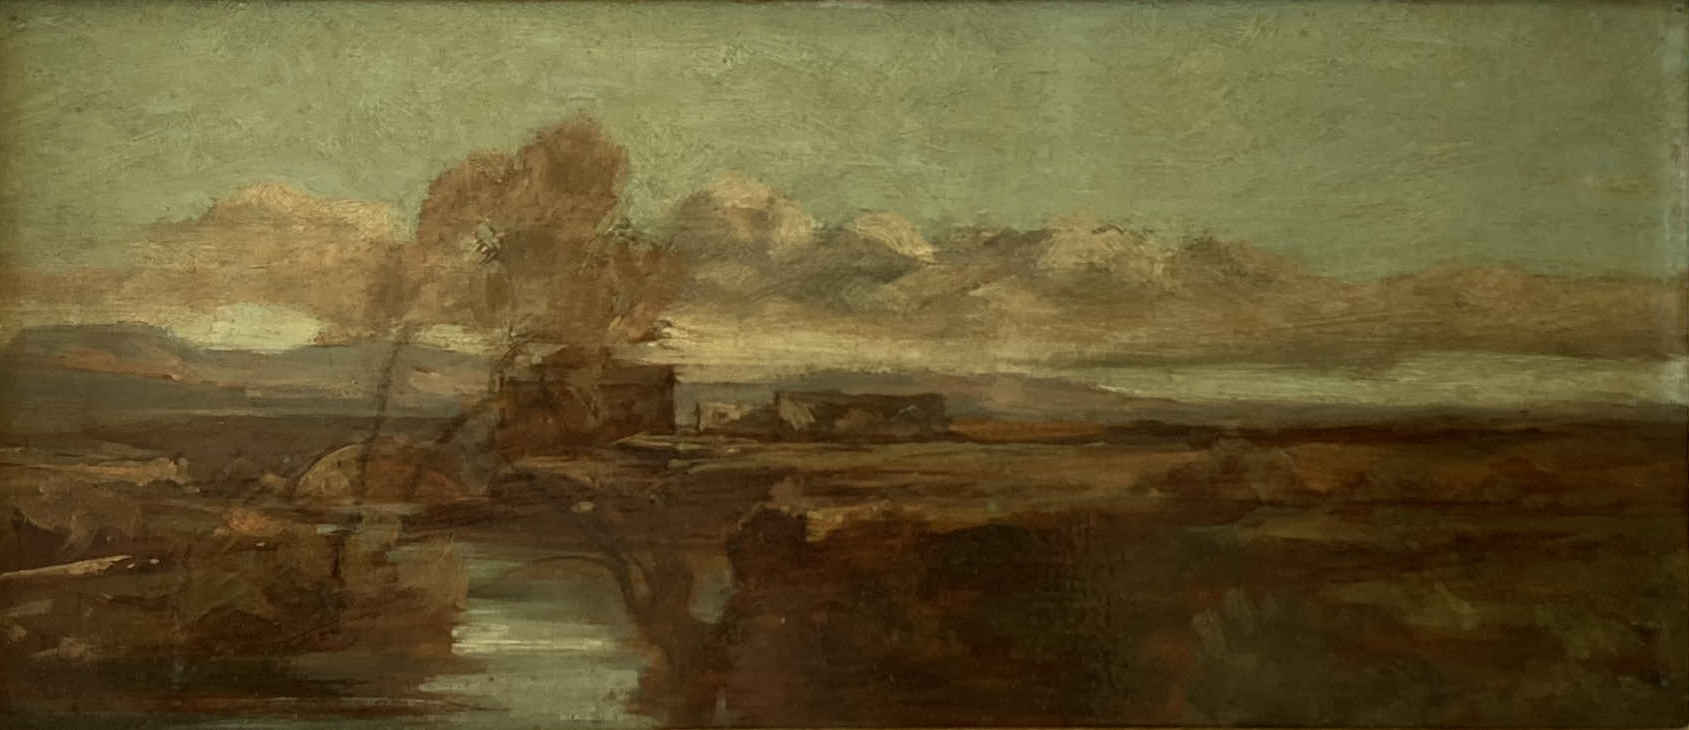 Dipinto a olio del paesaggista svizzero Barthélemy Menn, principale rappresentante della Scuola di Ginevra e importante pittore dello stile paysage intime, predecessore dell'Impressionismo; paesaggio fluviale.